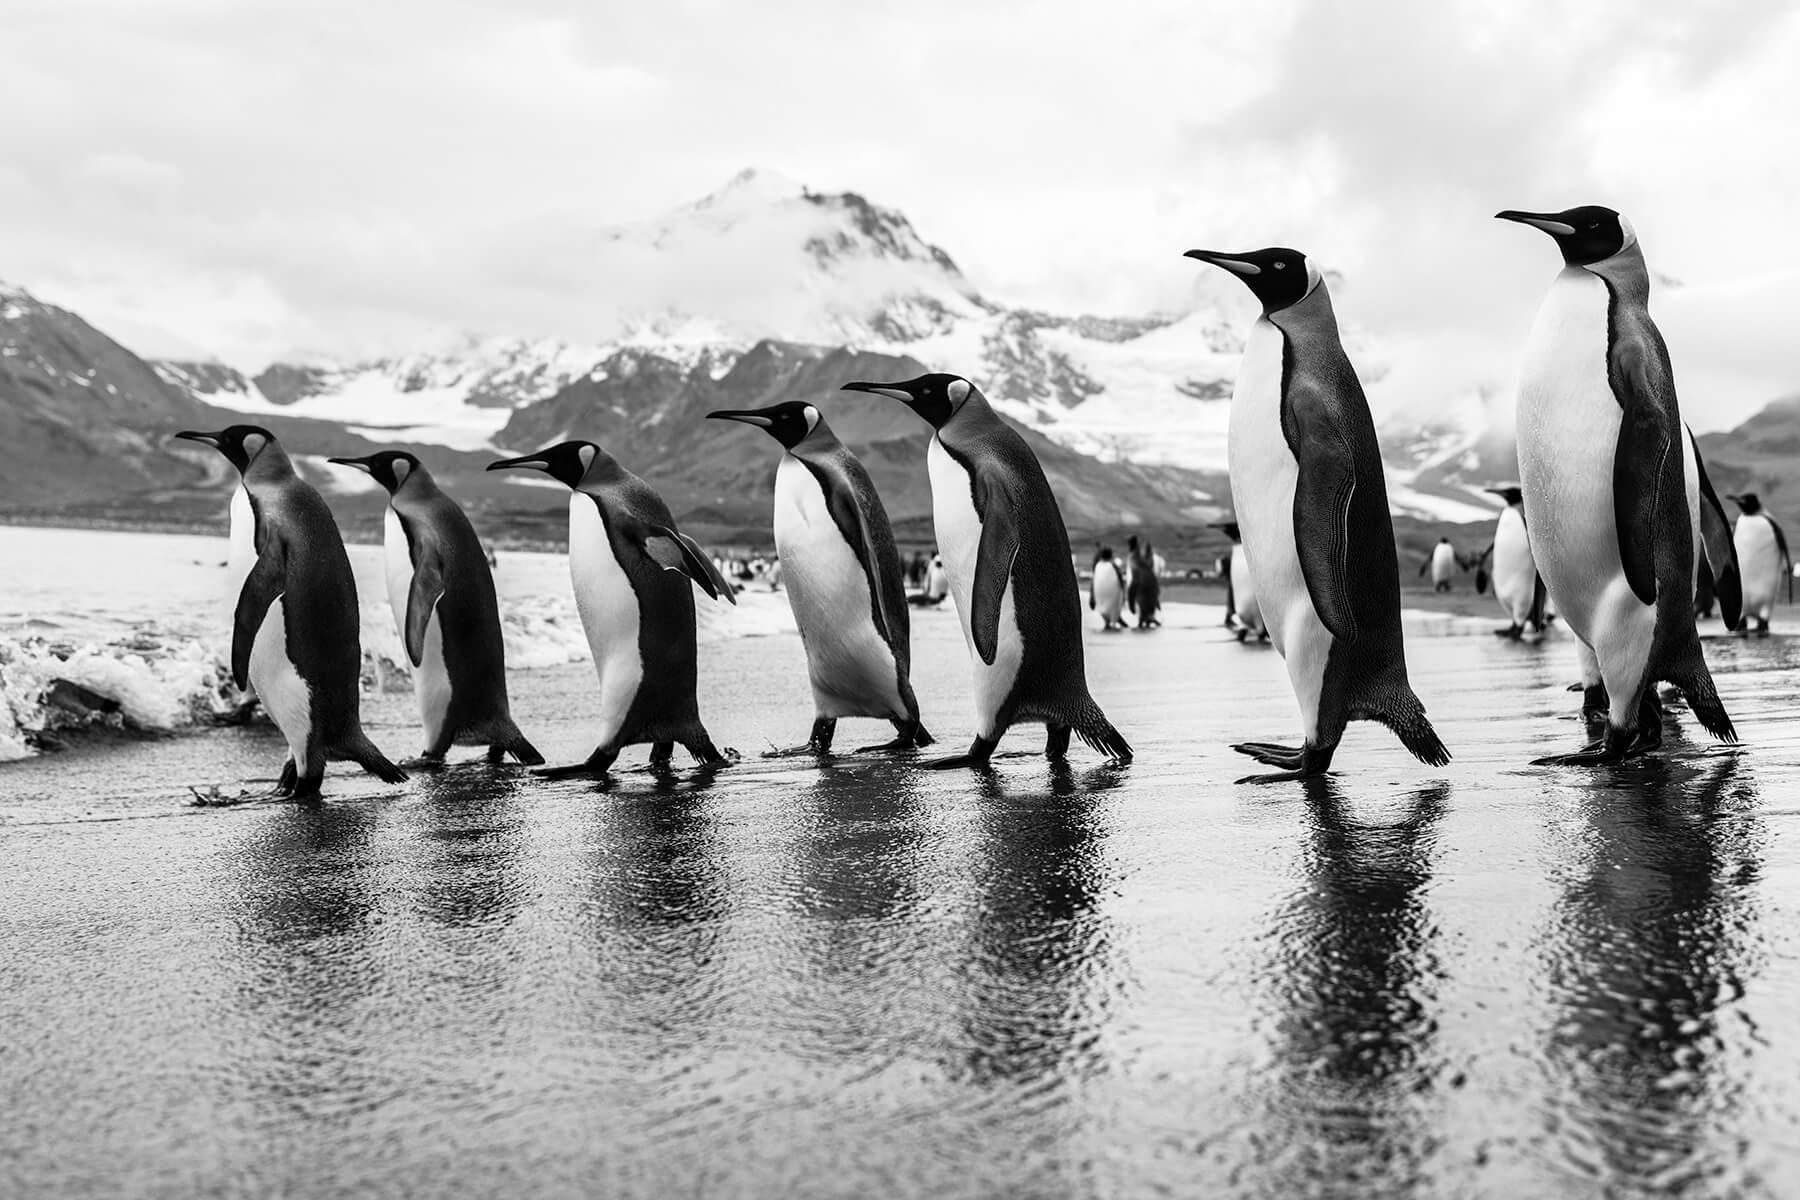 مسيرة البطاريق الملكية  المصور: أرتيم شيستاكوف. المكان: القطب الجنوبي.